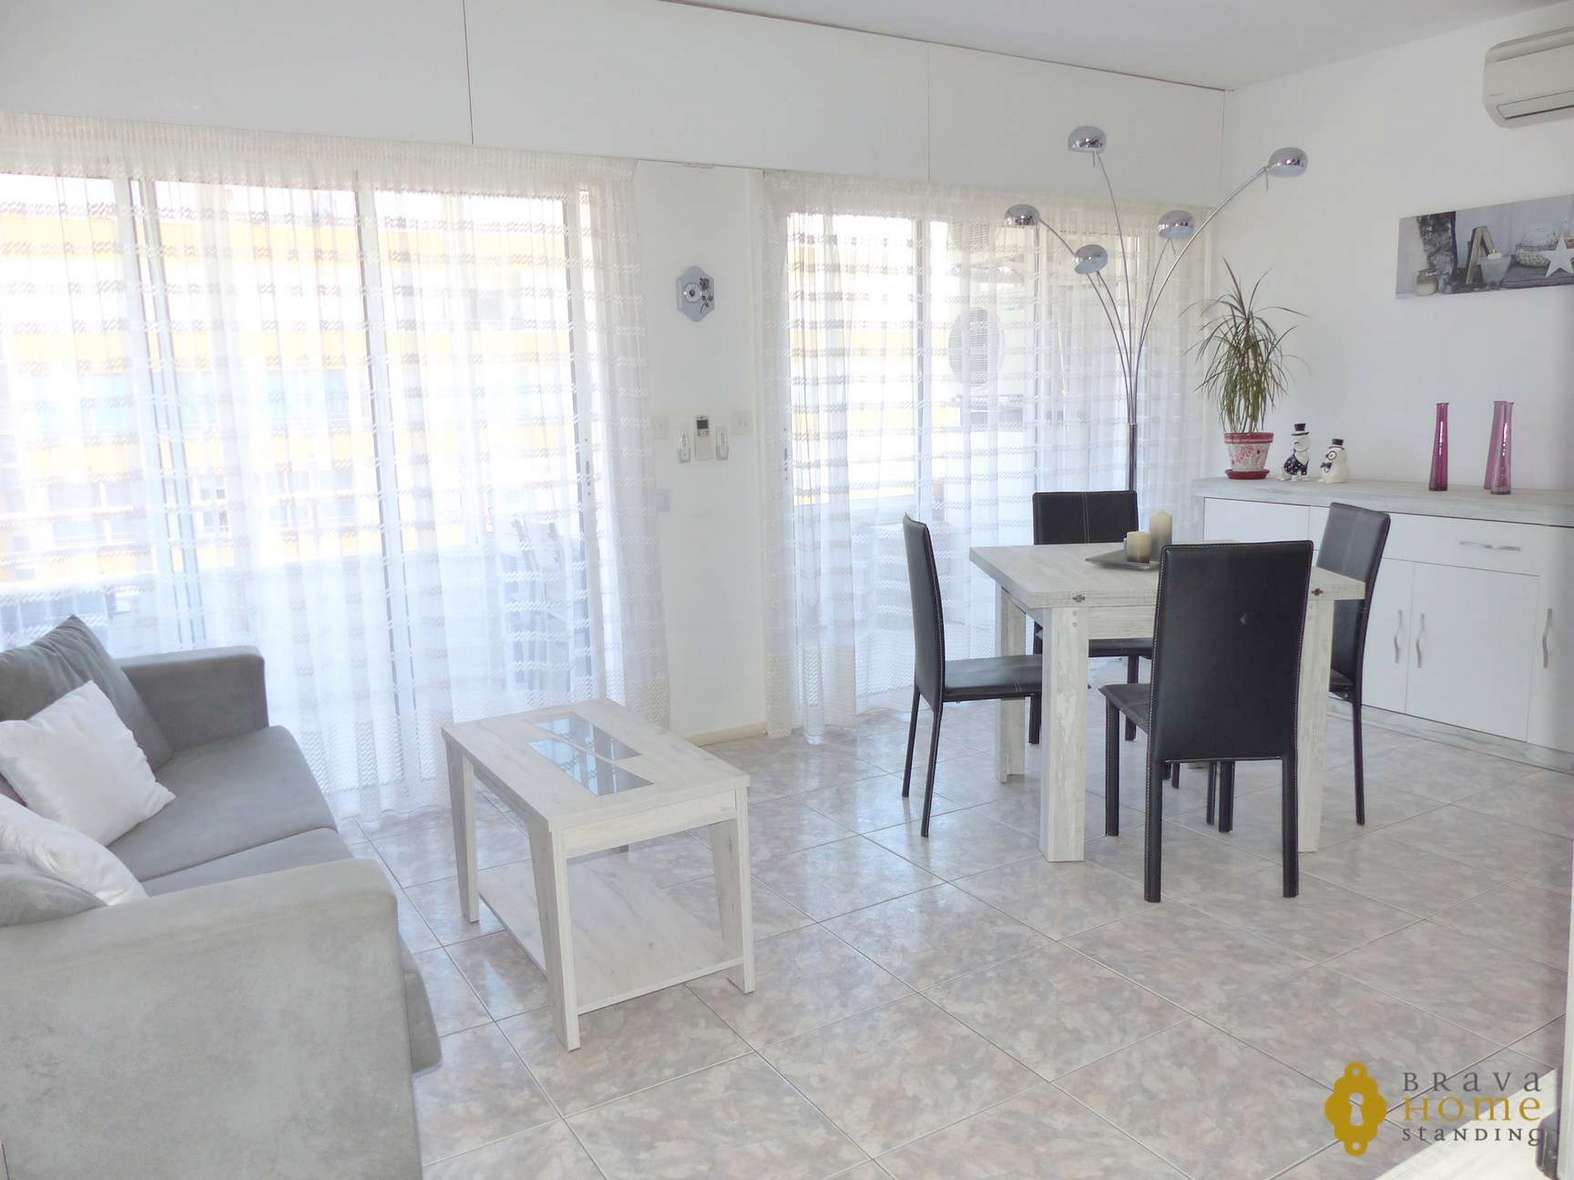 Espléndido apartamento renovado con vista al mar, en venta en Santa Margarita